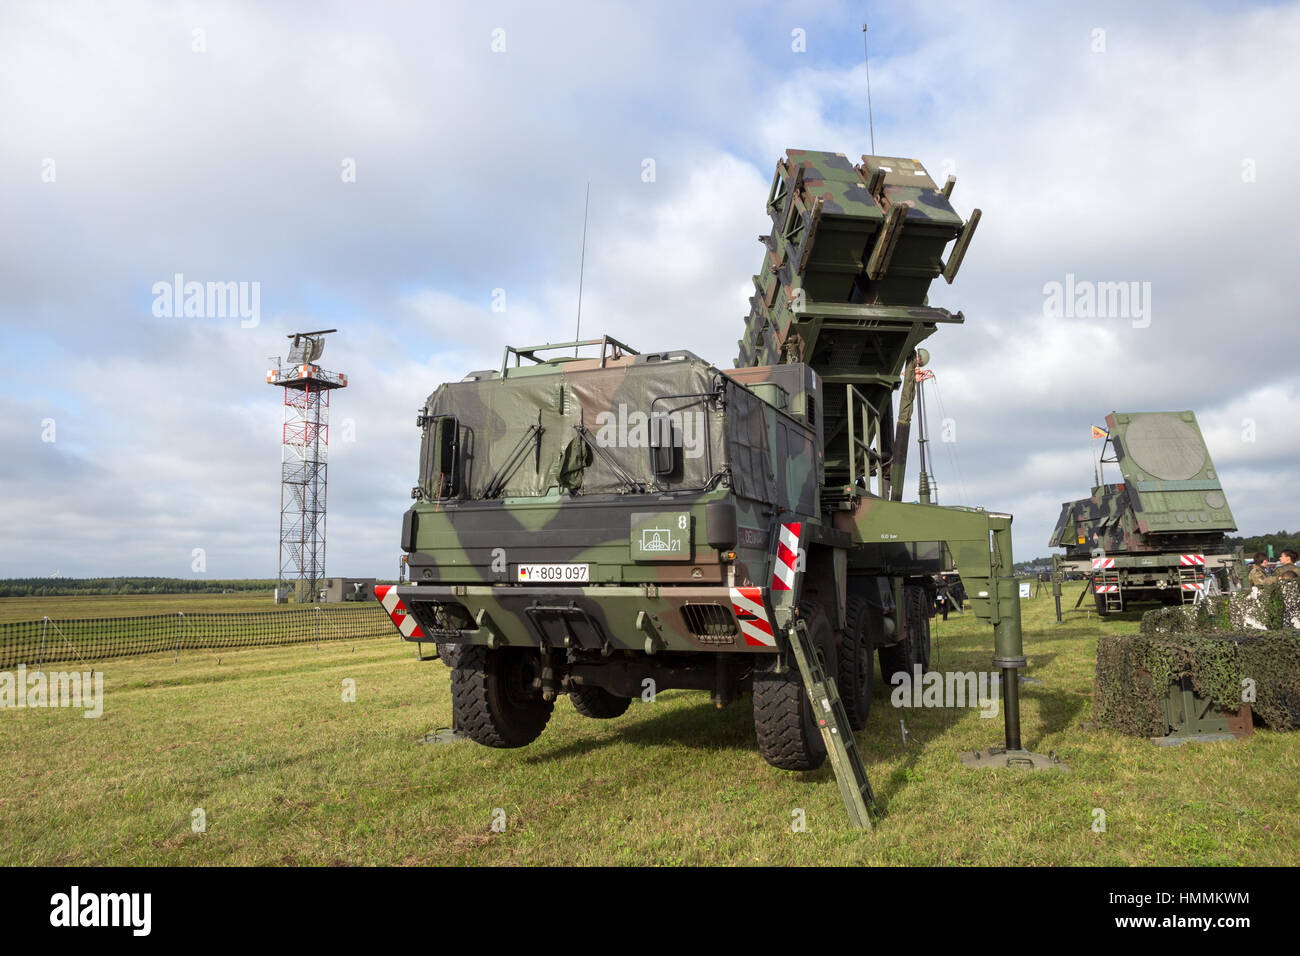 LAAGE, Deutschland - 23. August 2014: Eine deutsche Armee mobile MIM-104 Patriot Boden-Luft-Rakete (SAM) System auf dem Display während des Laage Airbase Open house Stockfoto